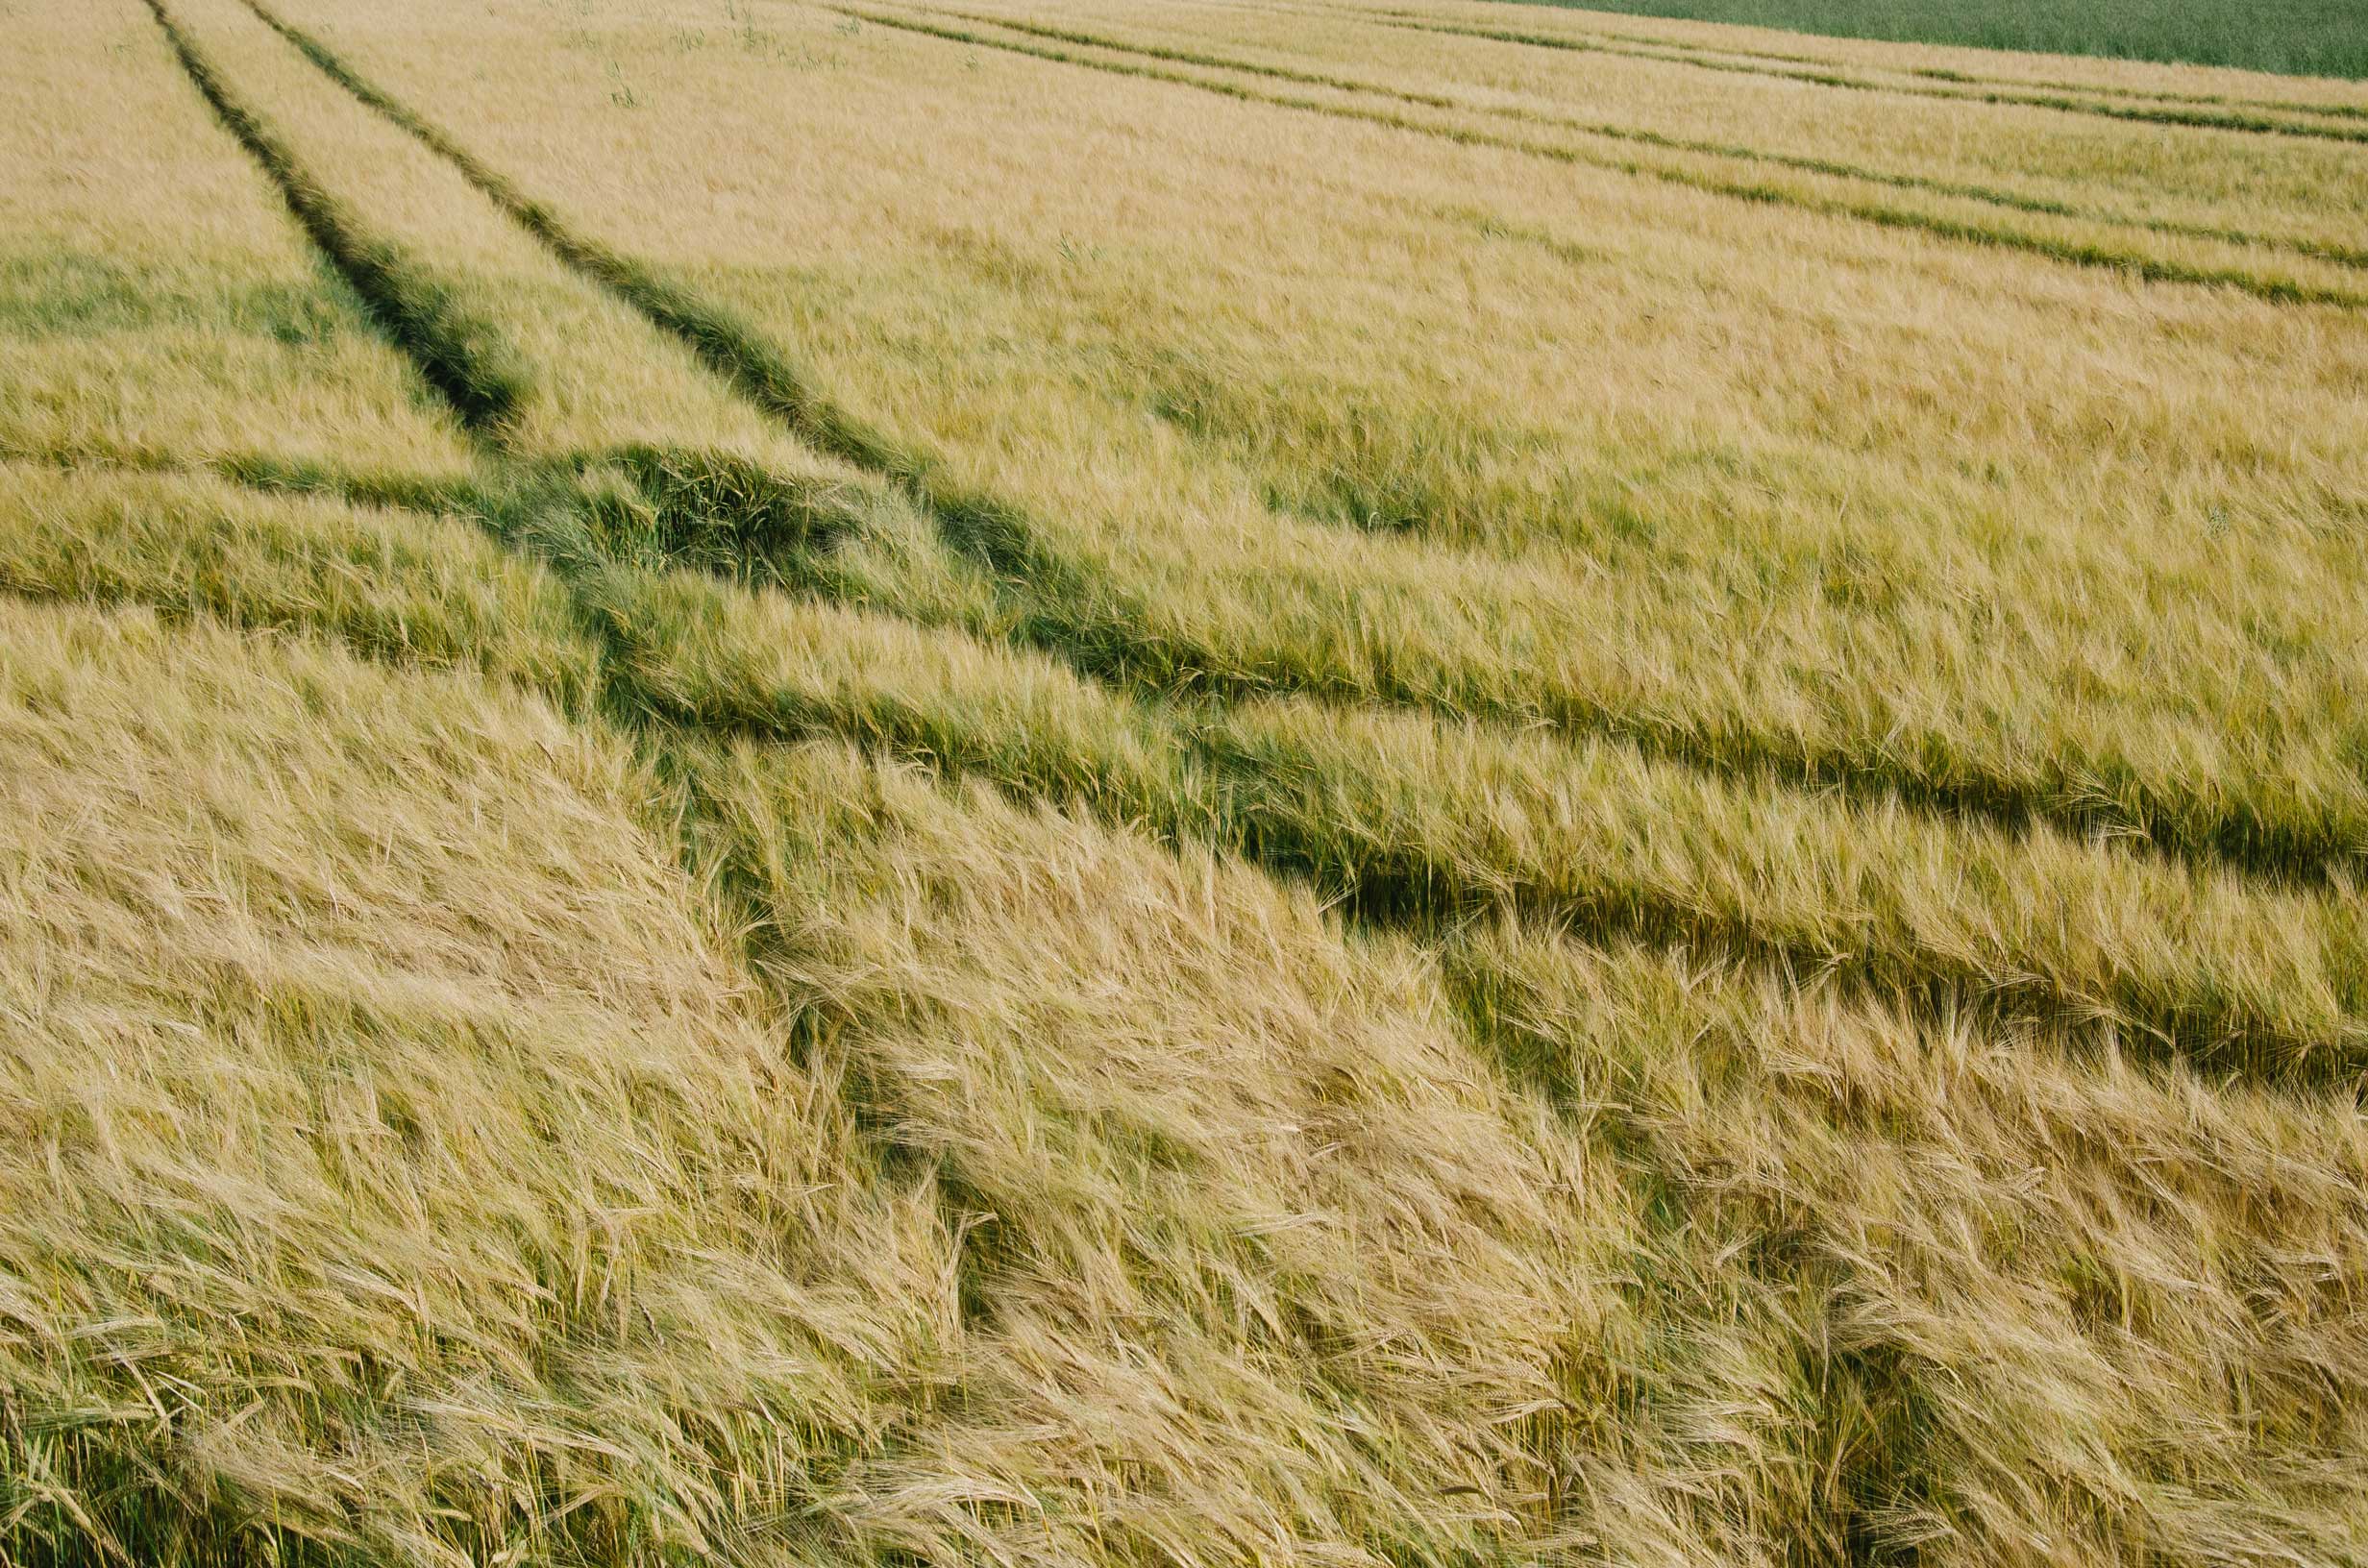 tracks in a field